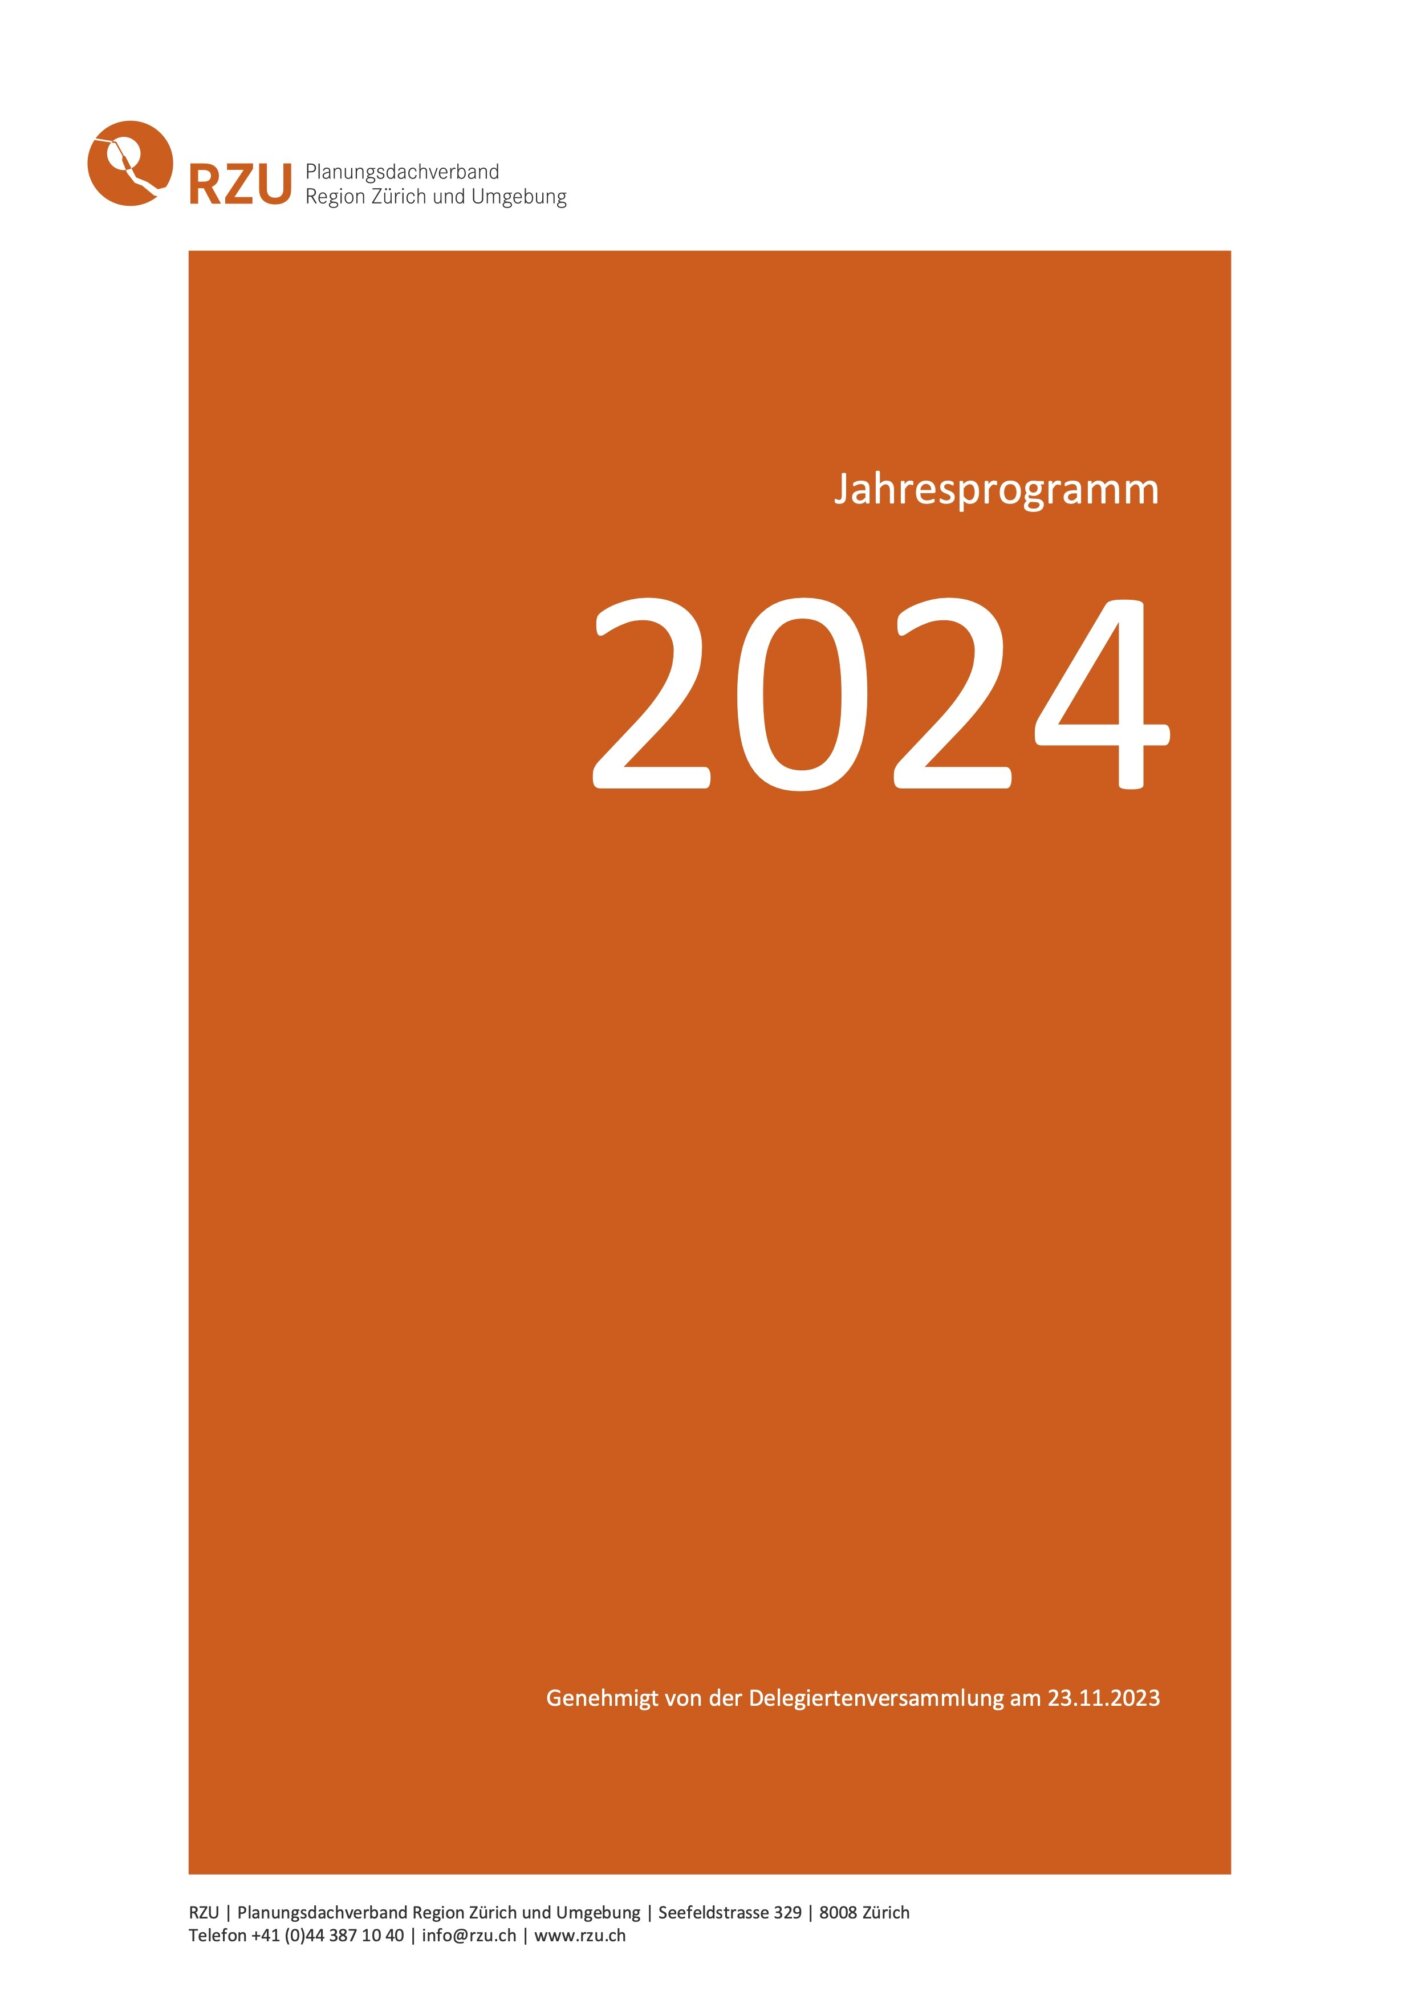 Titelseite RZU-Jahresprogramm 2024 (Abb. © RZU 2023)